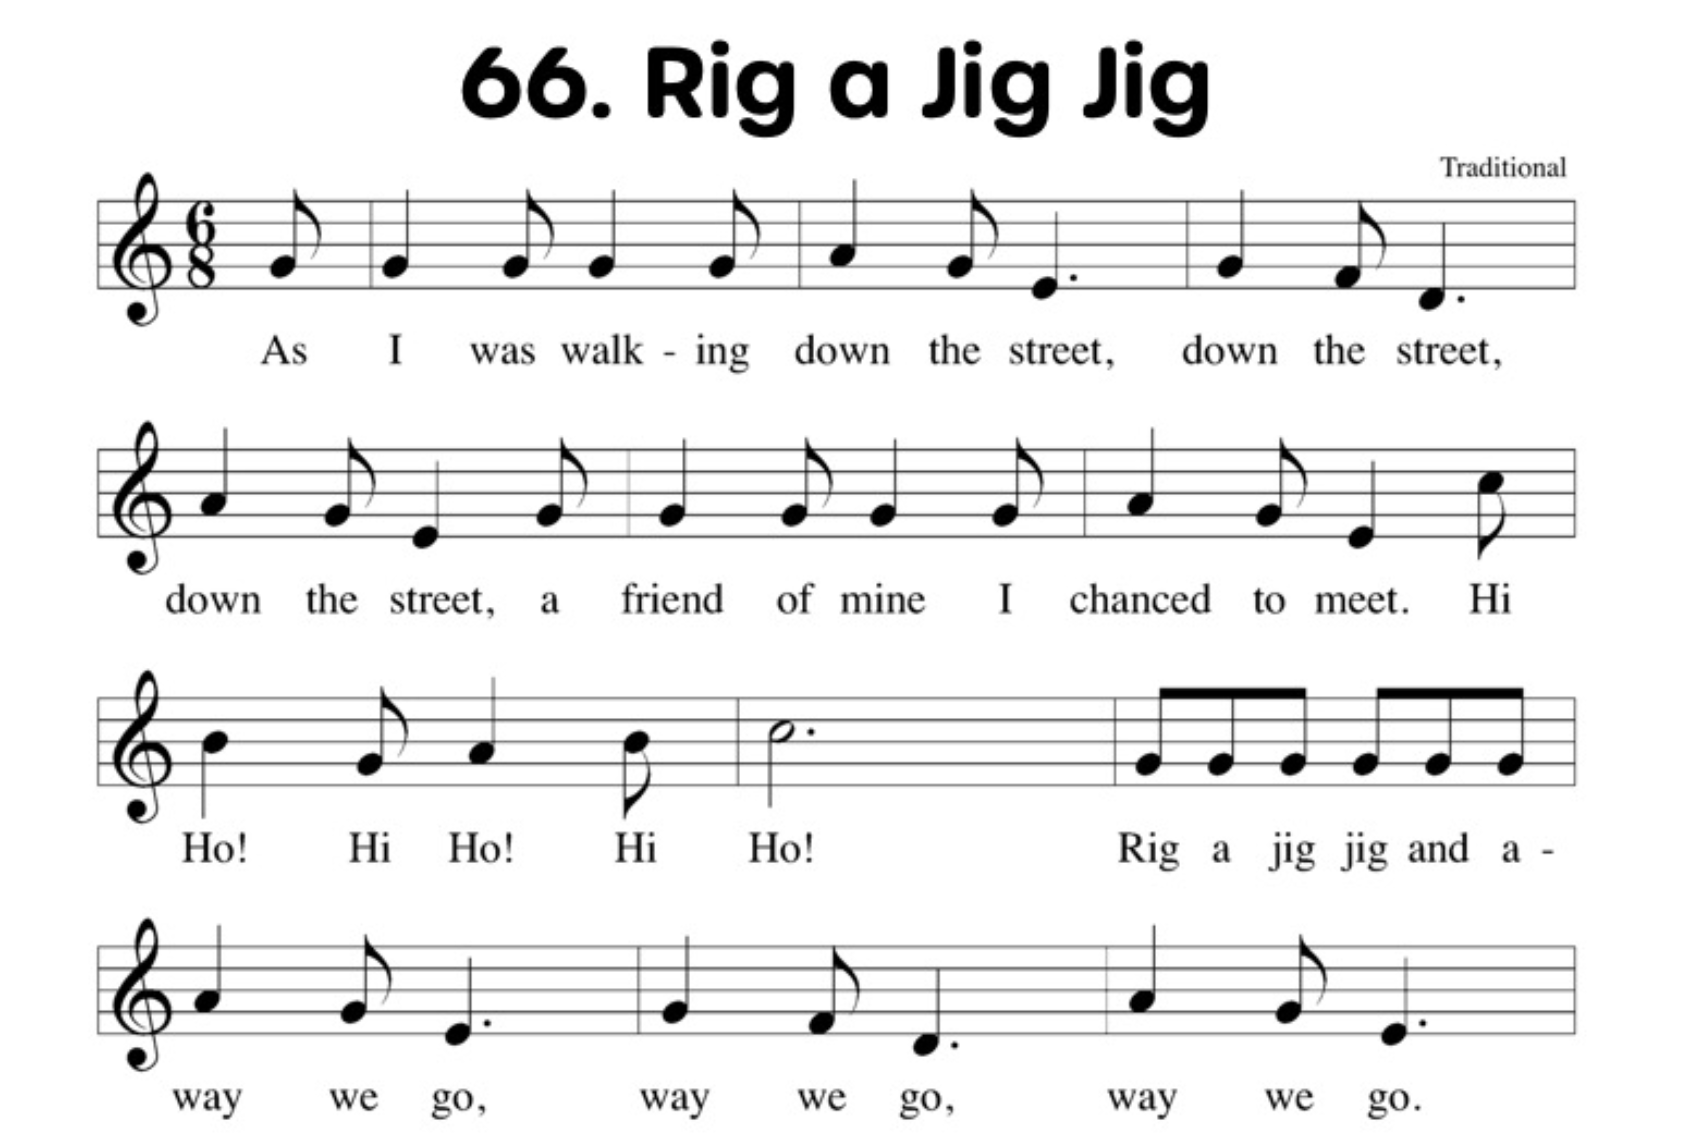 Rig a jig jig notation